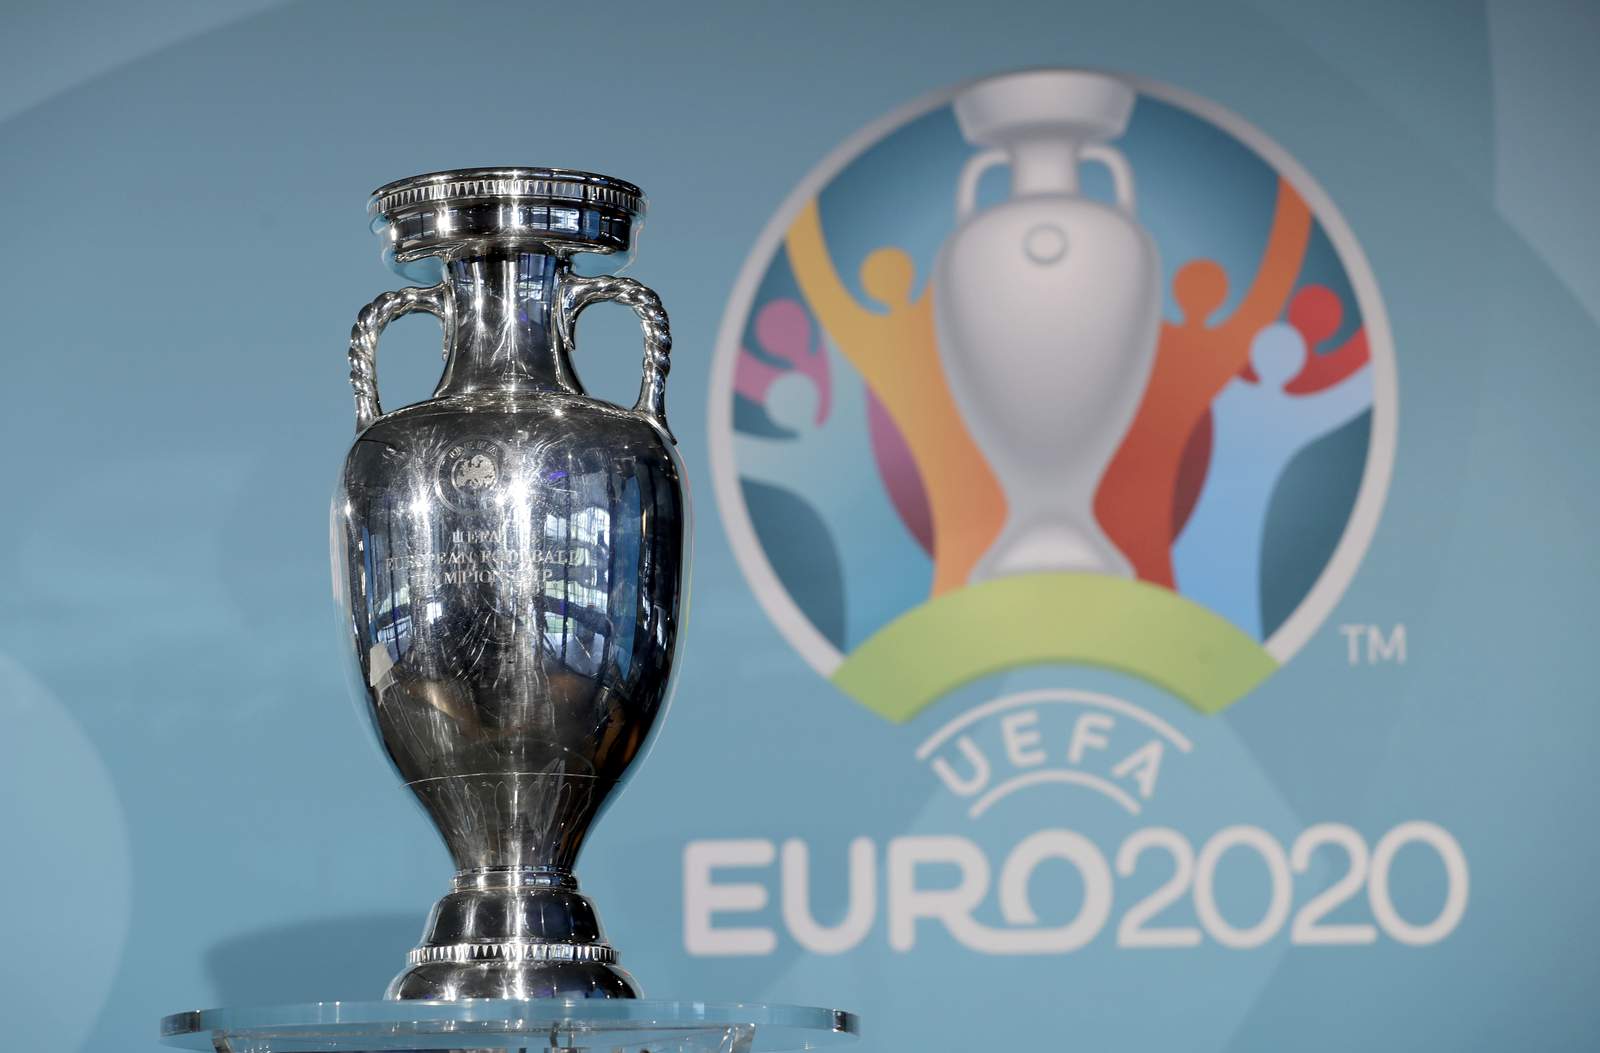 UEFA postpones Euro 2020 by 1 year because of pandemic